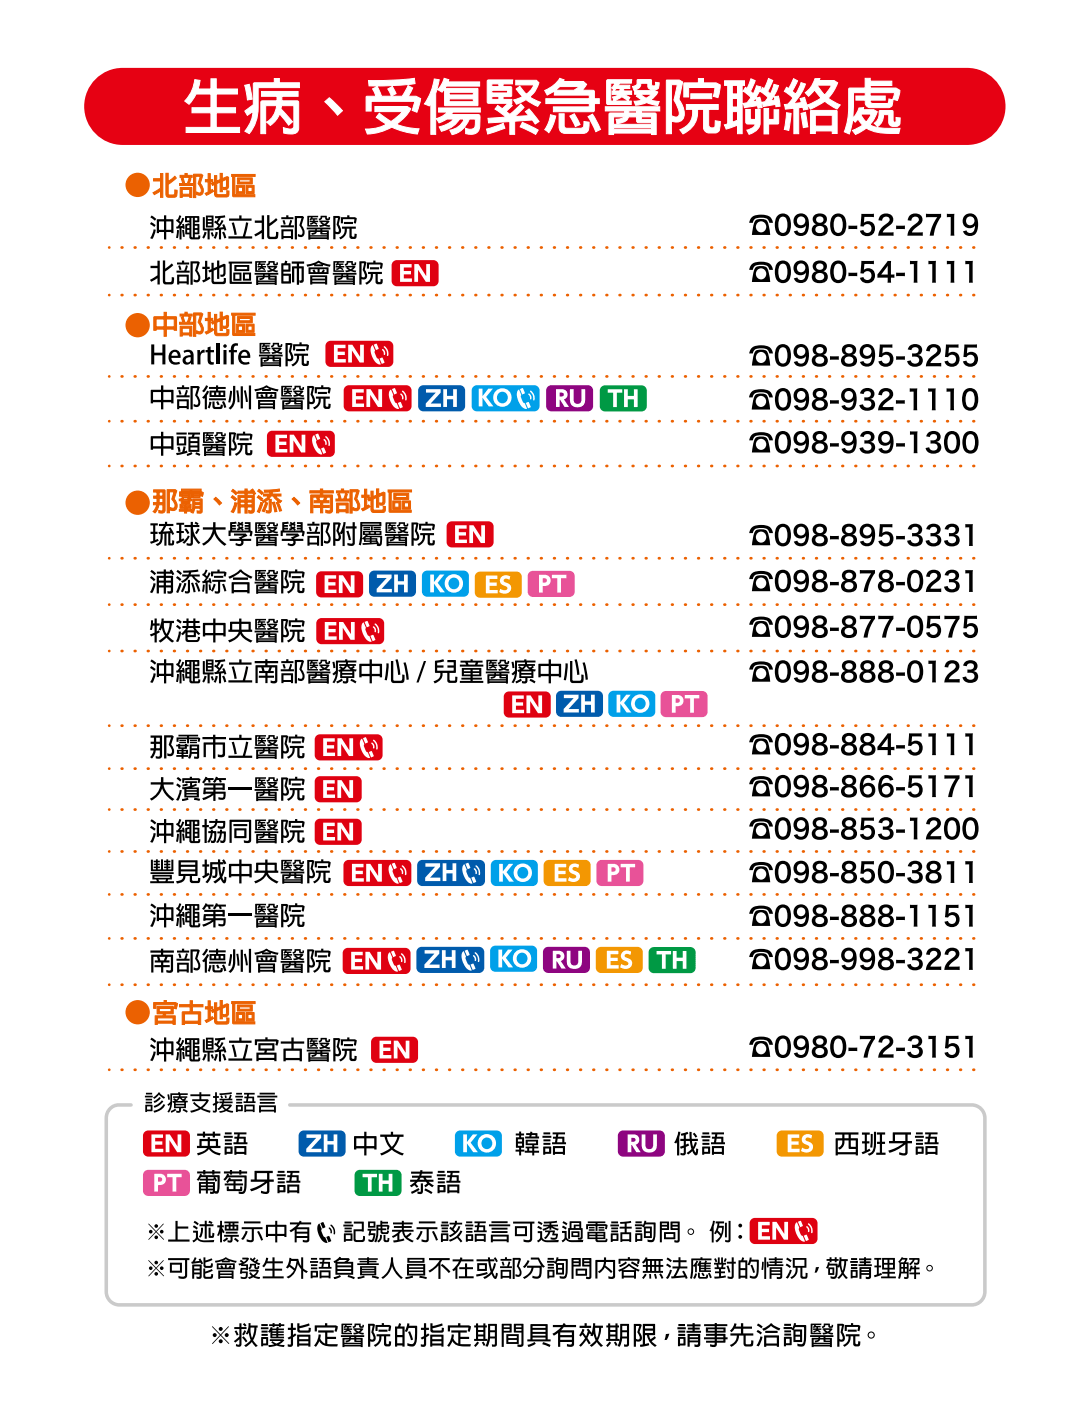 沖繩行前準備-提供外語服務的醫院列表